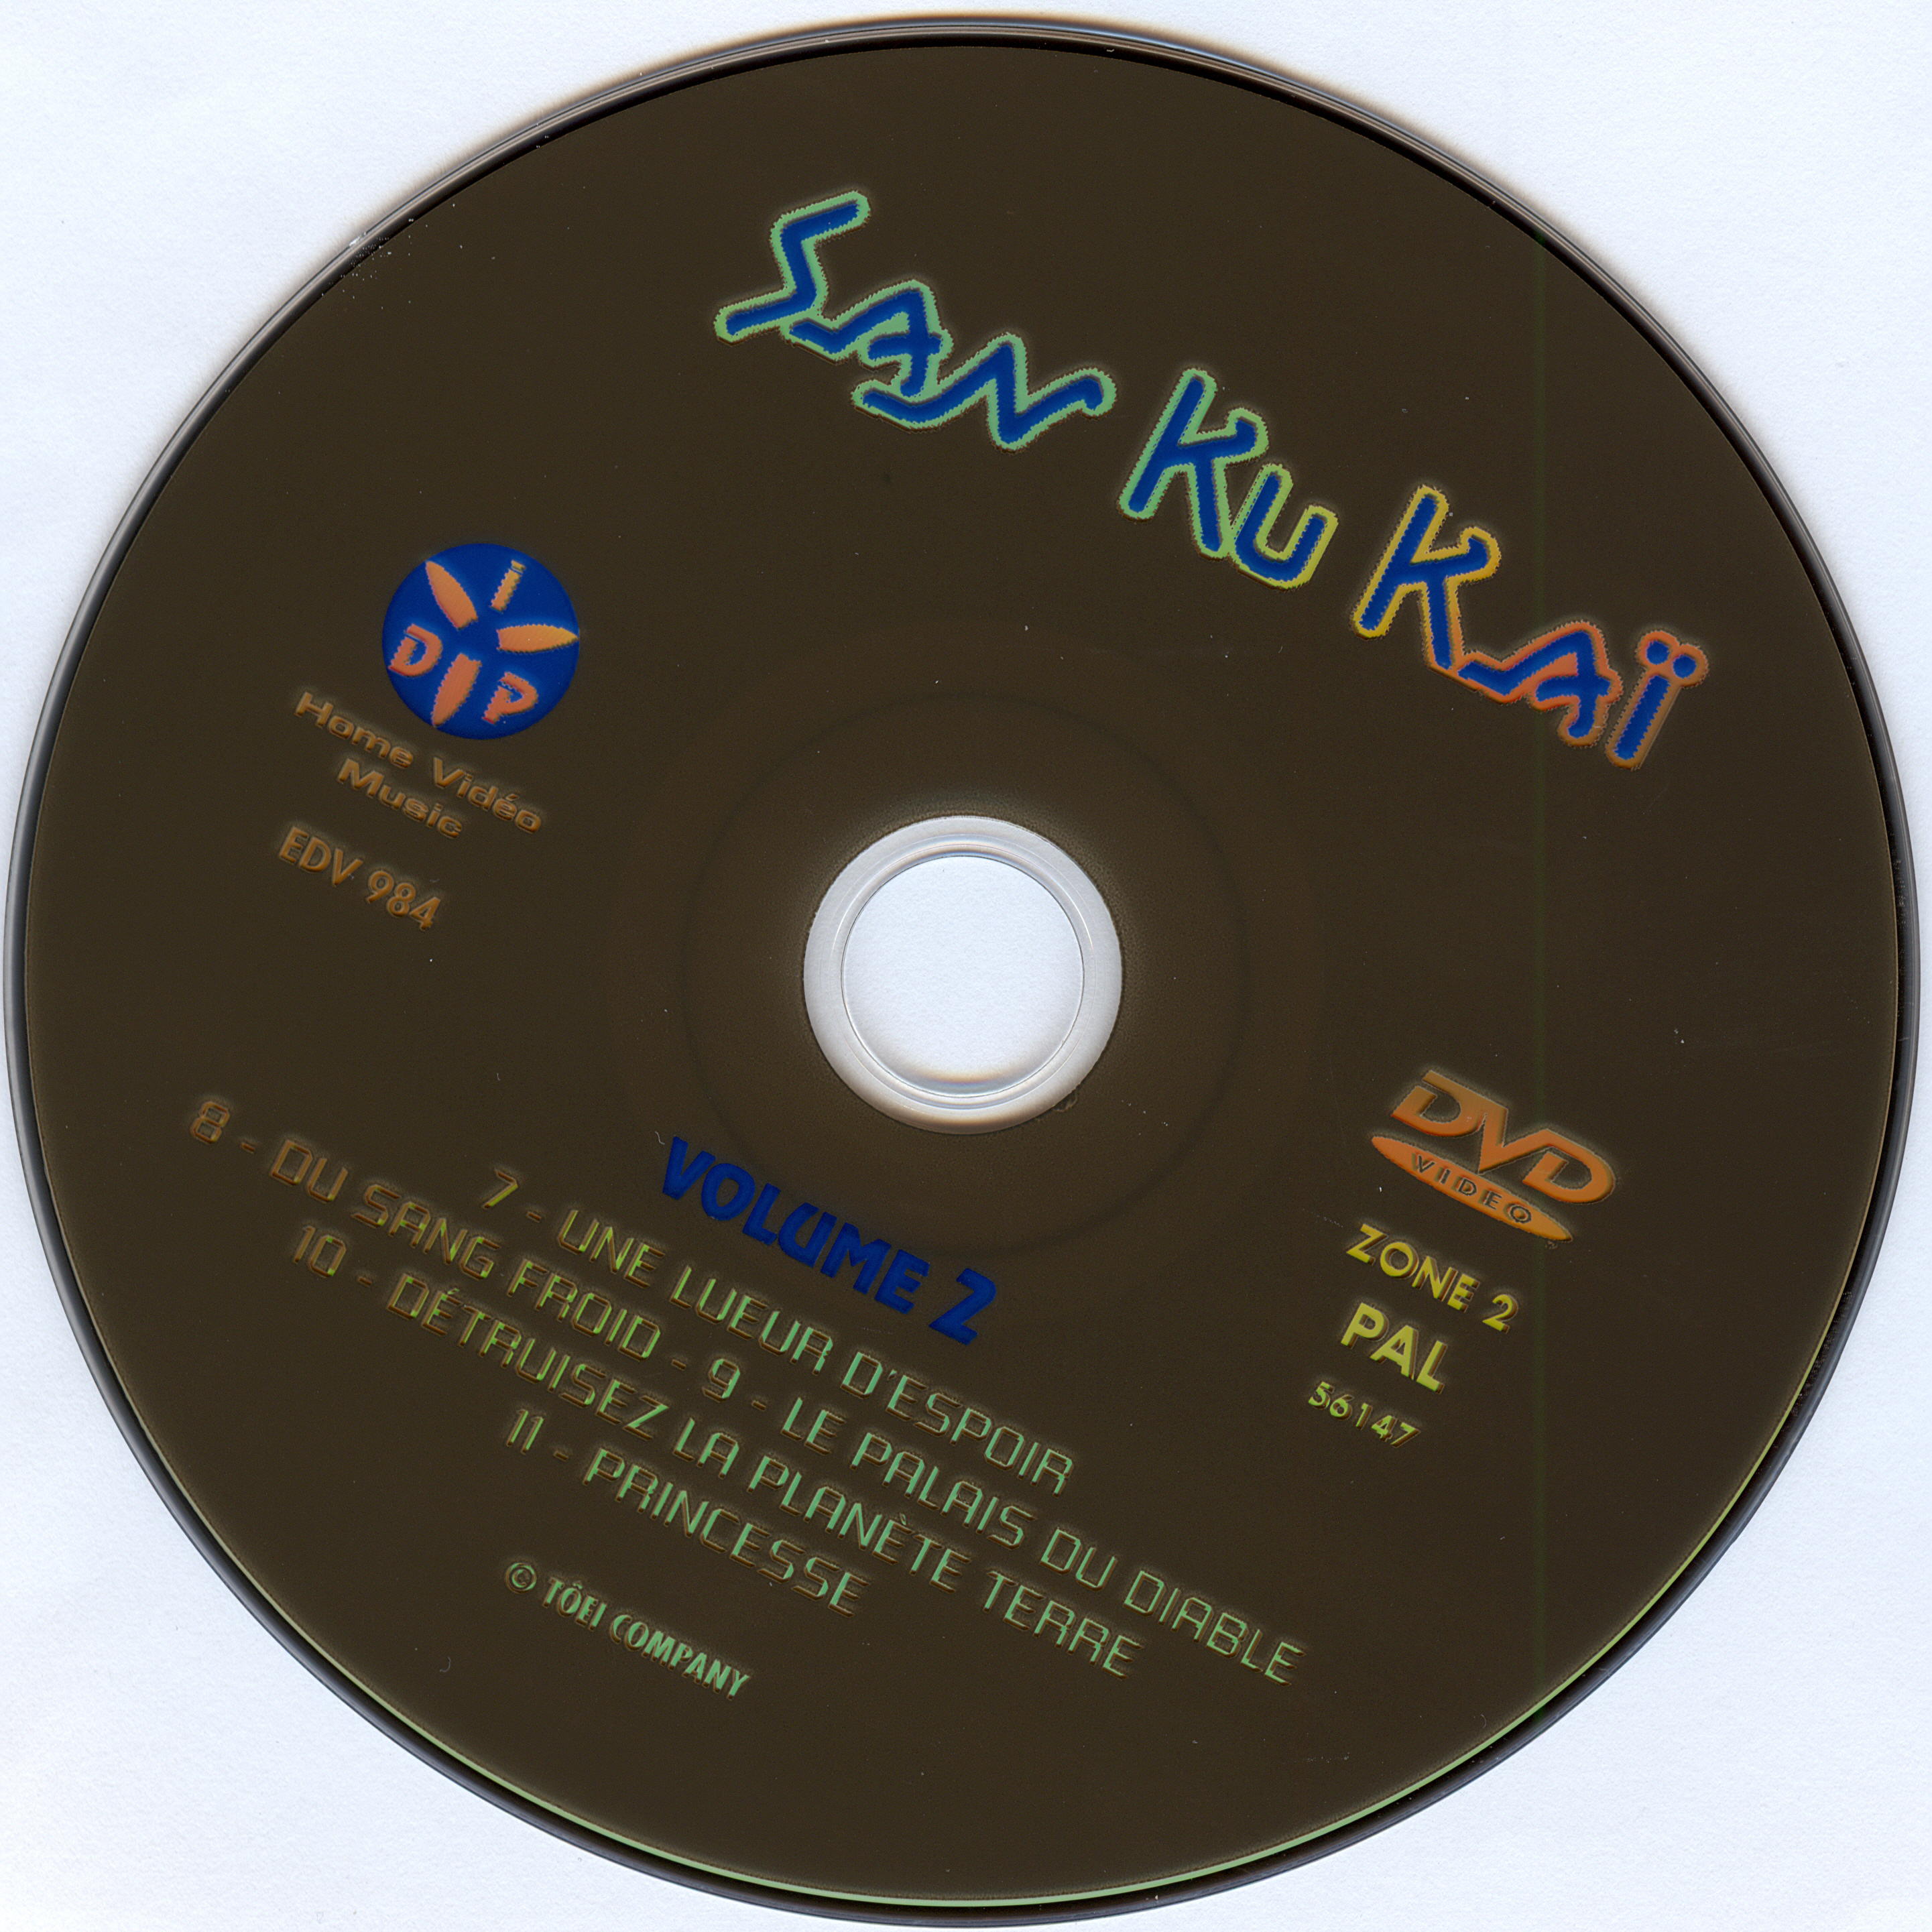 San ku kai DISC 2